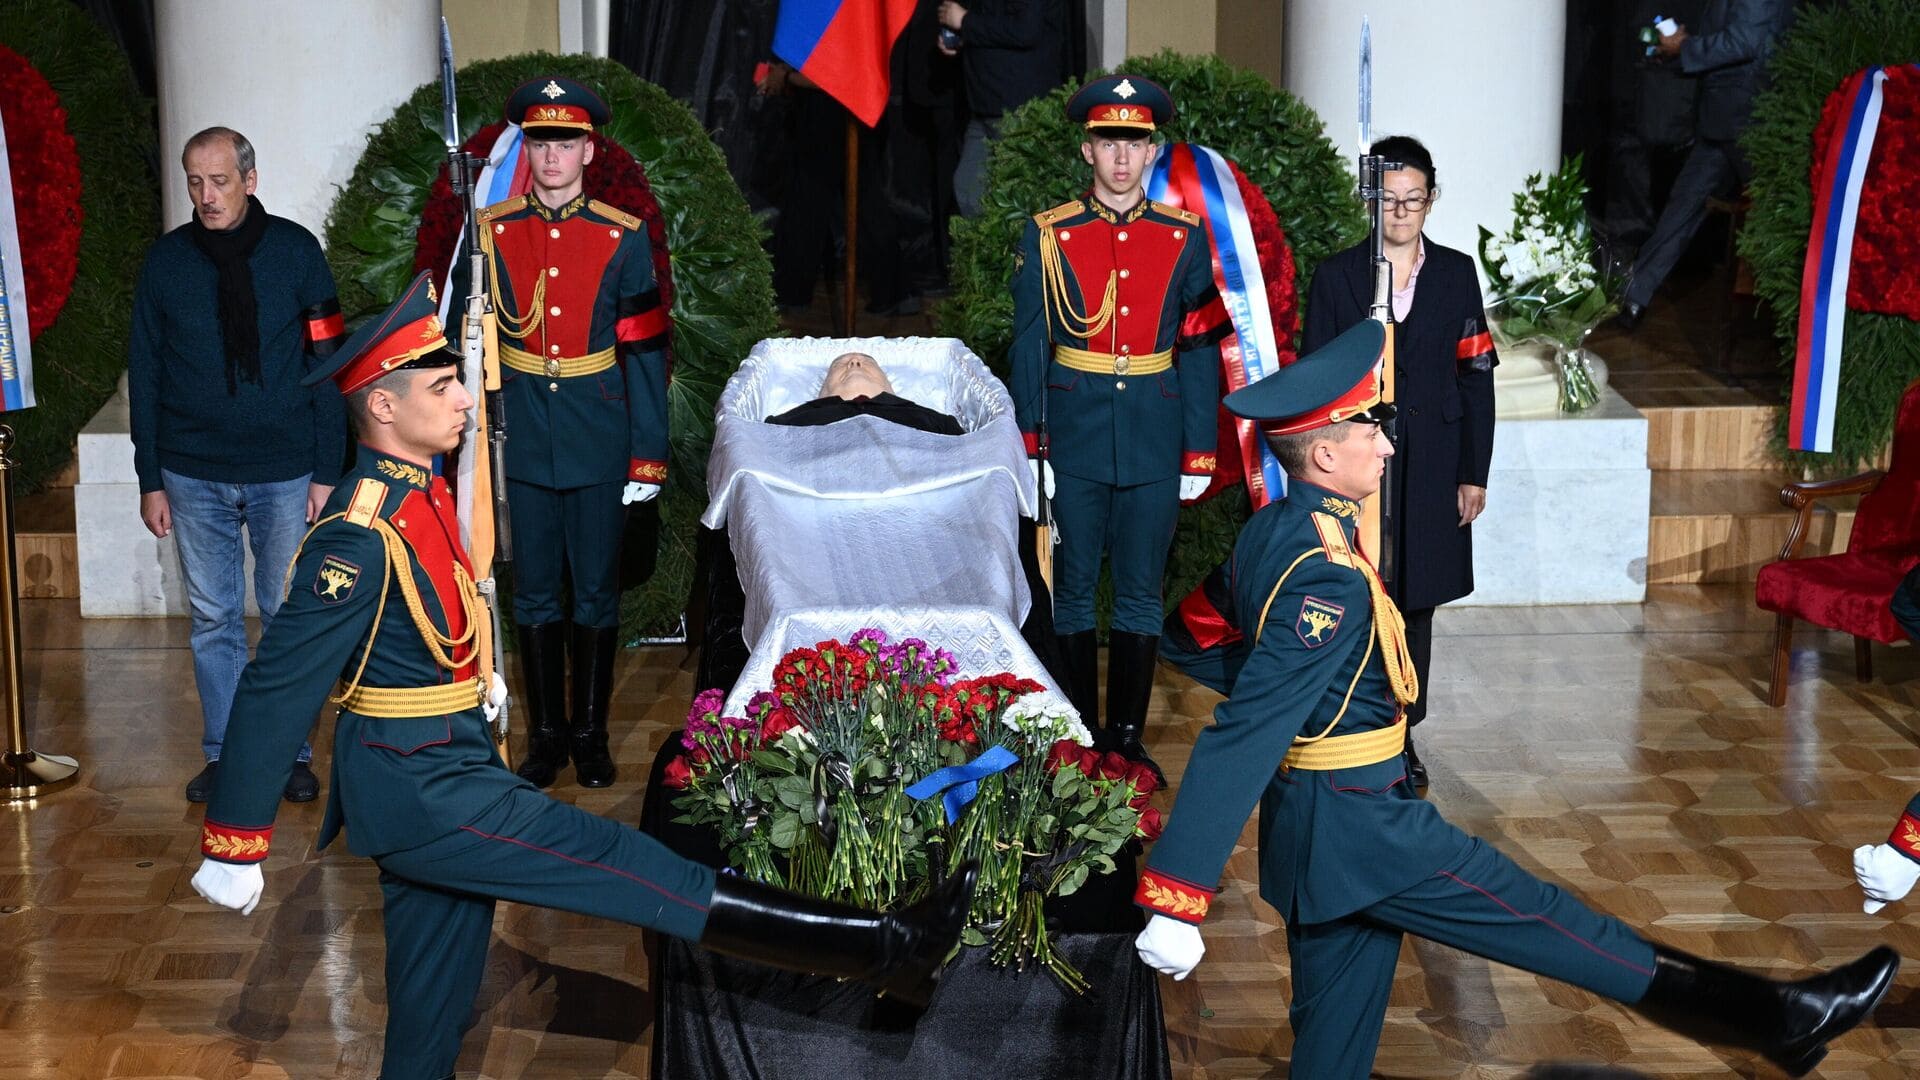 SSCB’nin son lideri Gorbaçov, Moskova'da törenle toprağa verildi